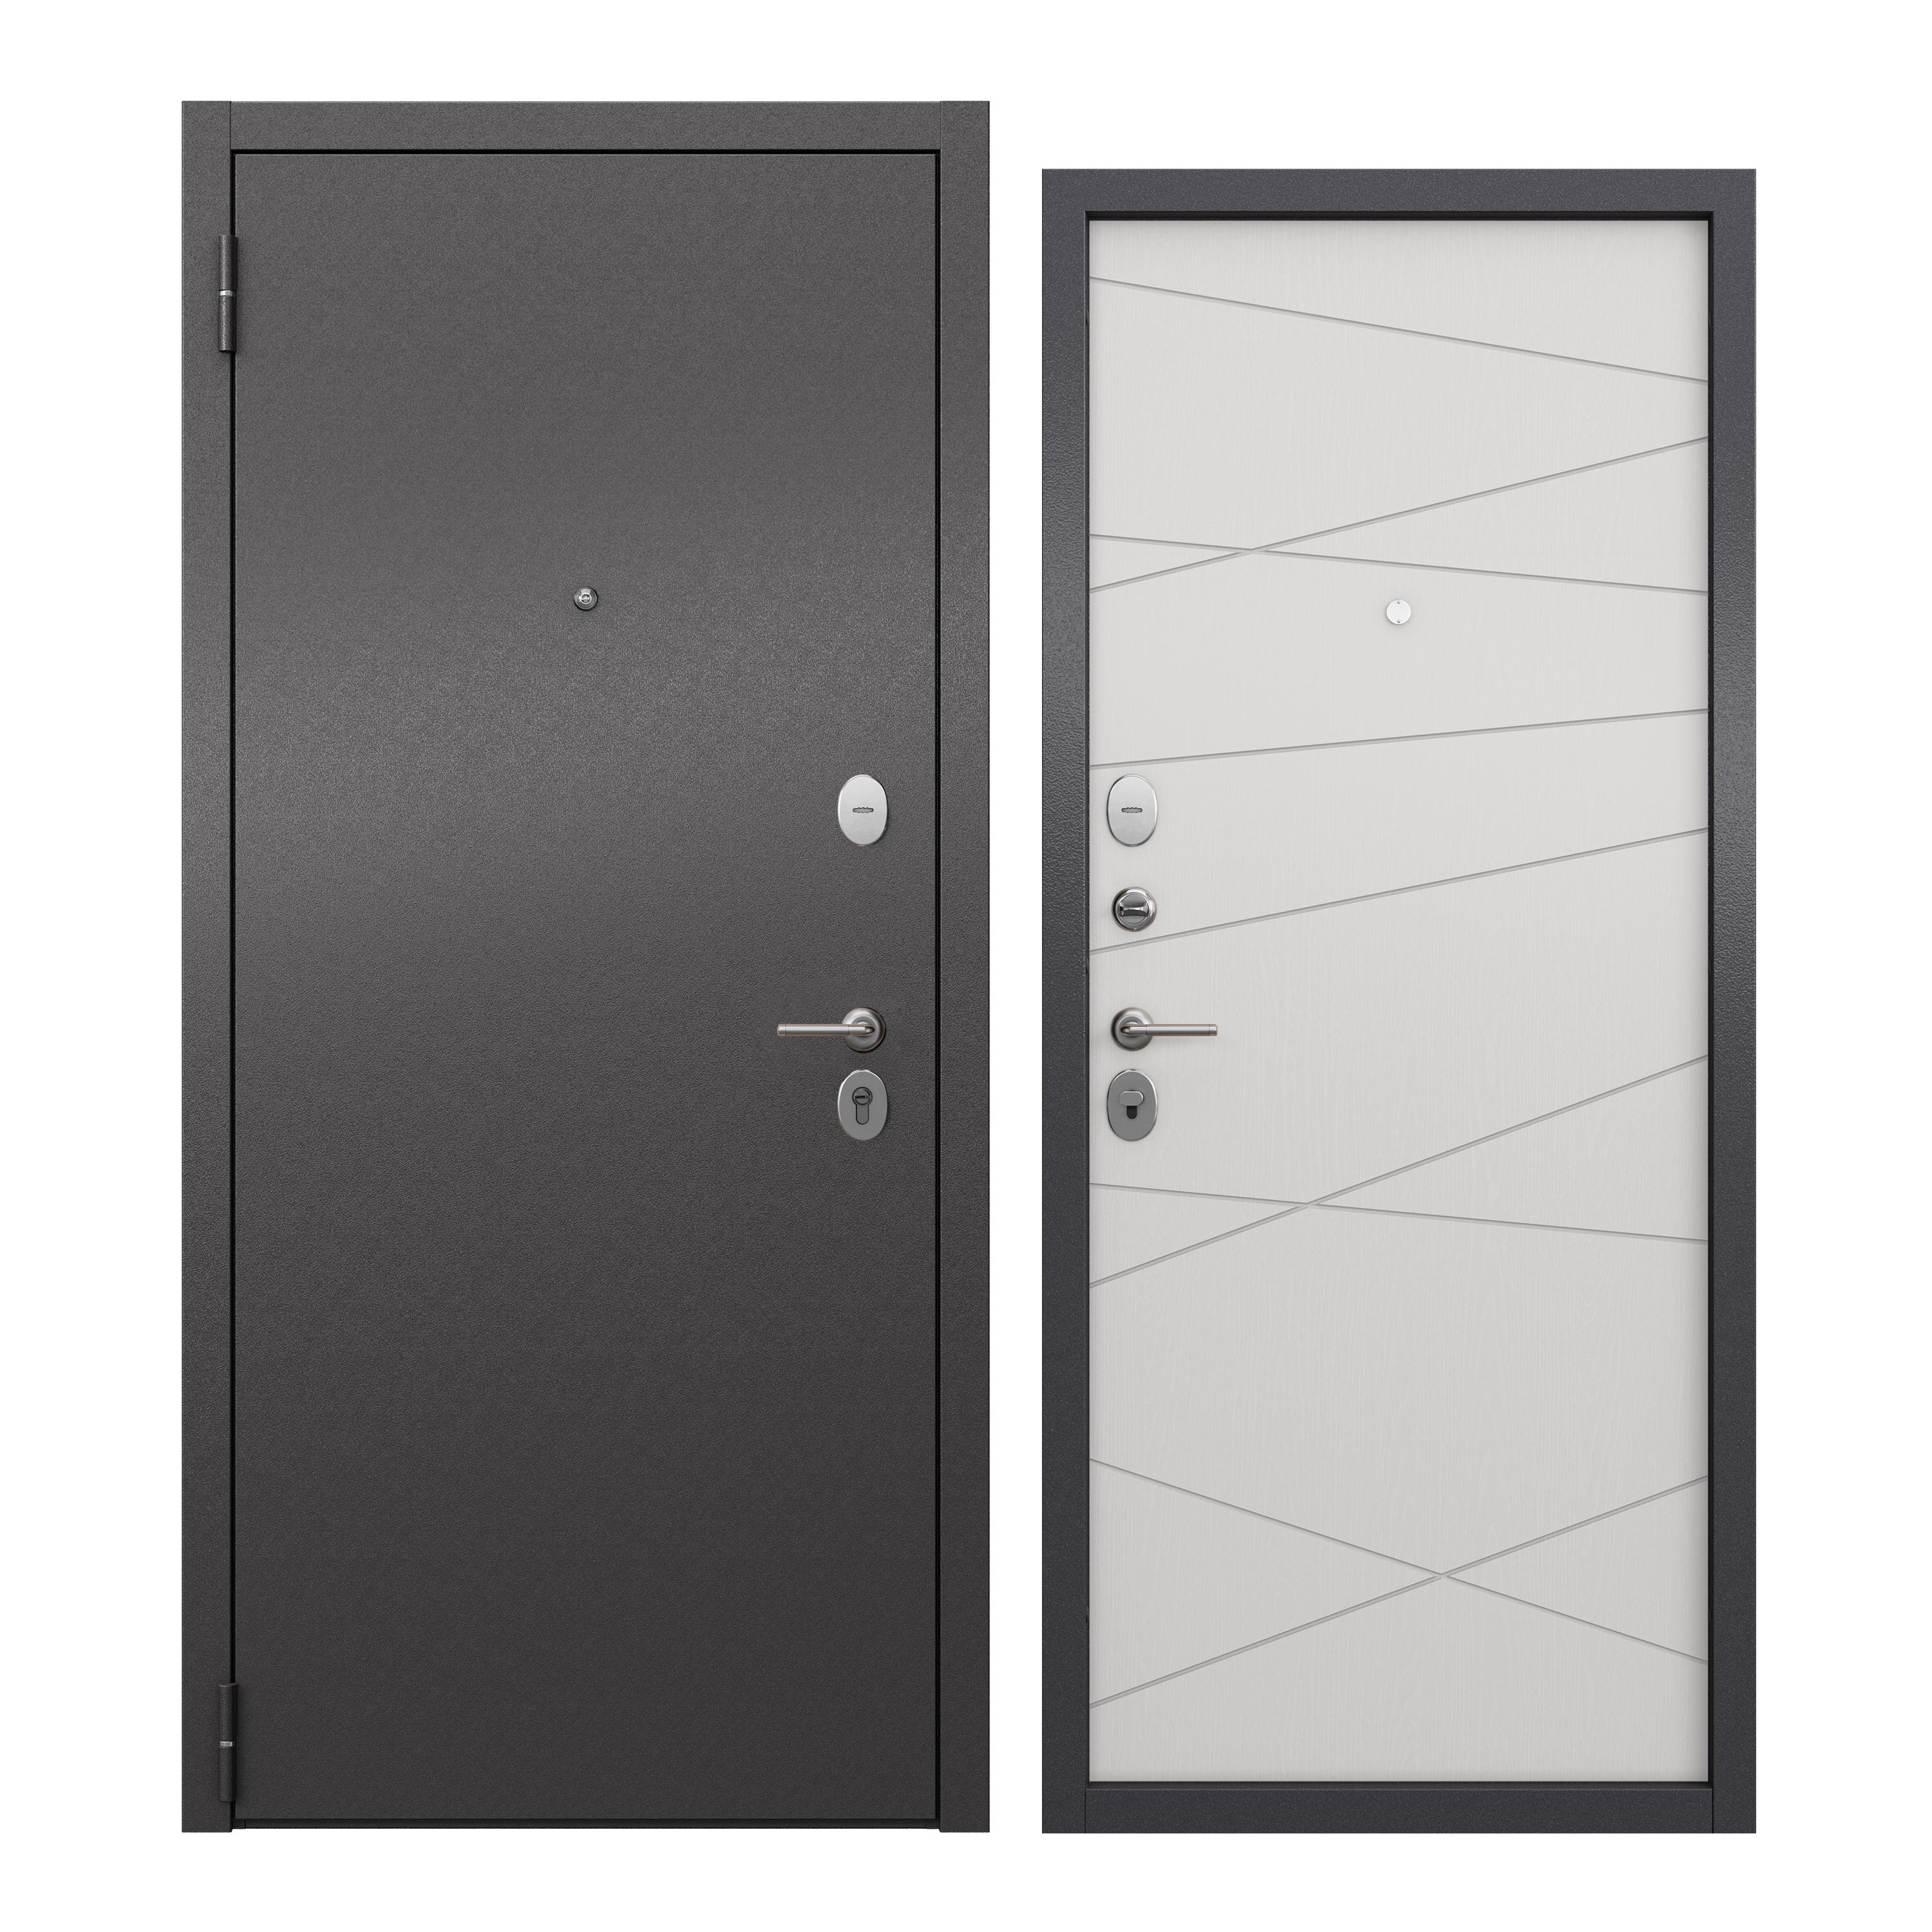 Дверь входная для квартиры ProLine металлическая Apartment X 860х2050, левая, серый/белый дверь входная buldoors марко левая букле шоколад дуб шале натуральный со стеклом 860х2050 мм